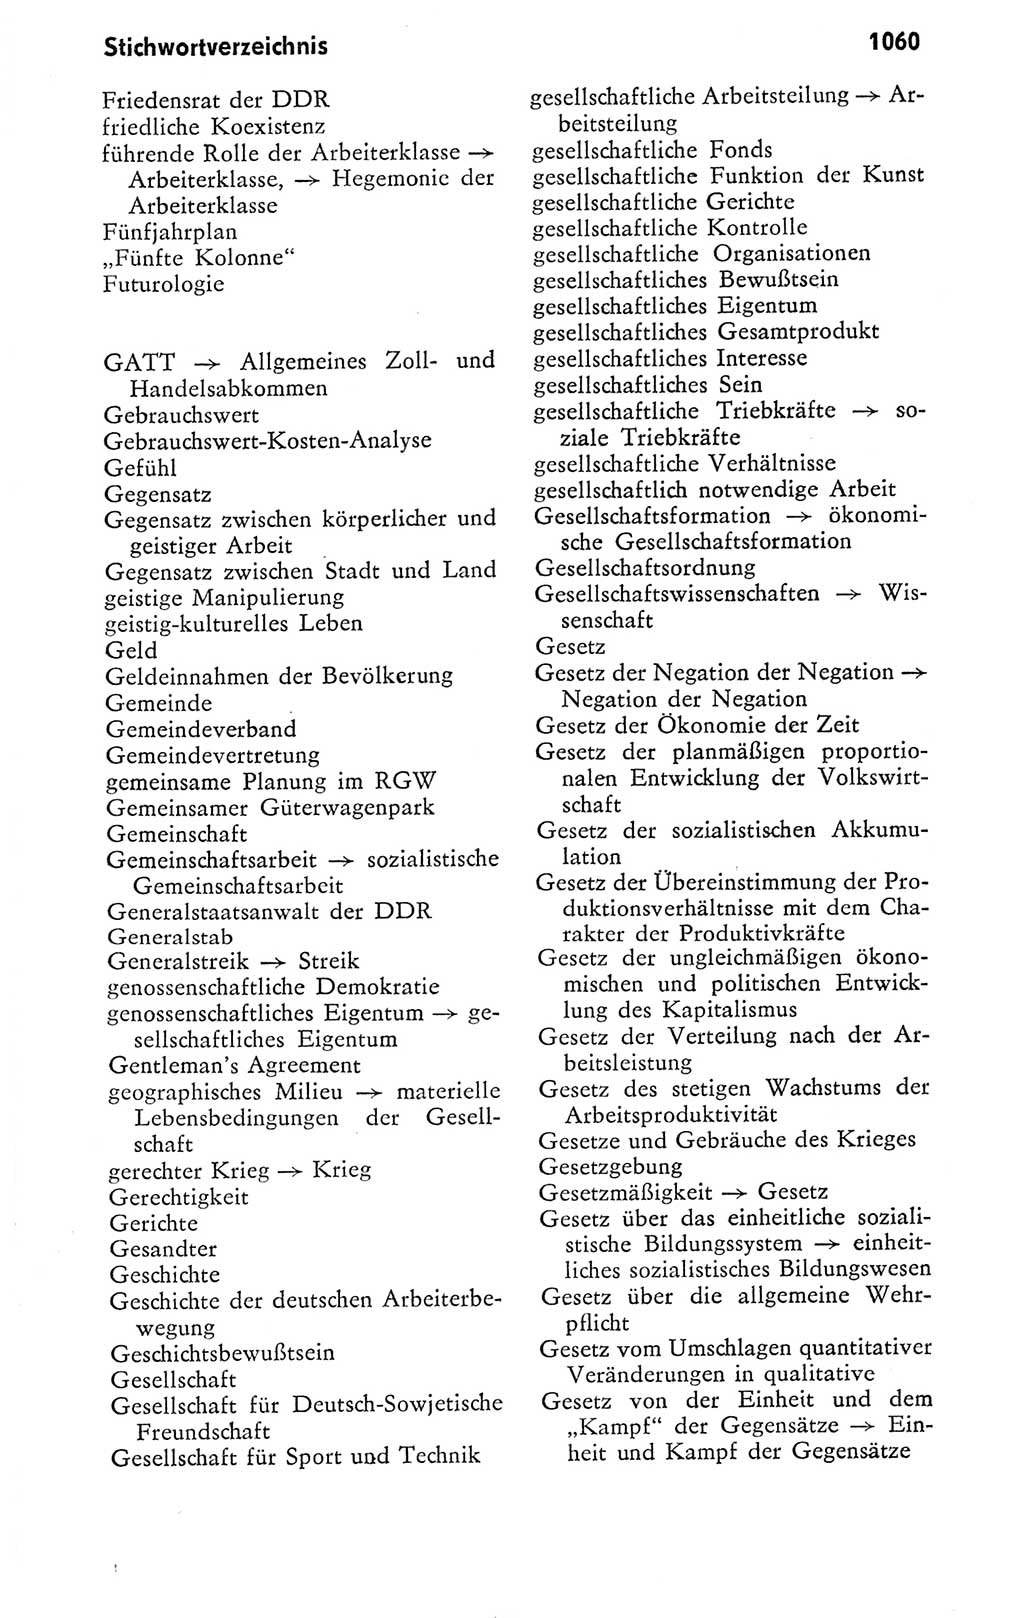 Kleines politisches Wörterbuch [Deutsche Demokratische Republik (DDR)] 1978, Seite 1060 (Kl. pol. Wb. DDR 1978, S. 1060)